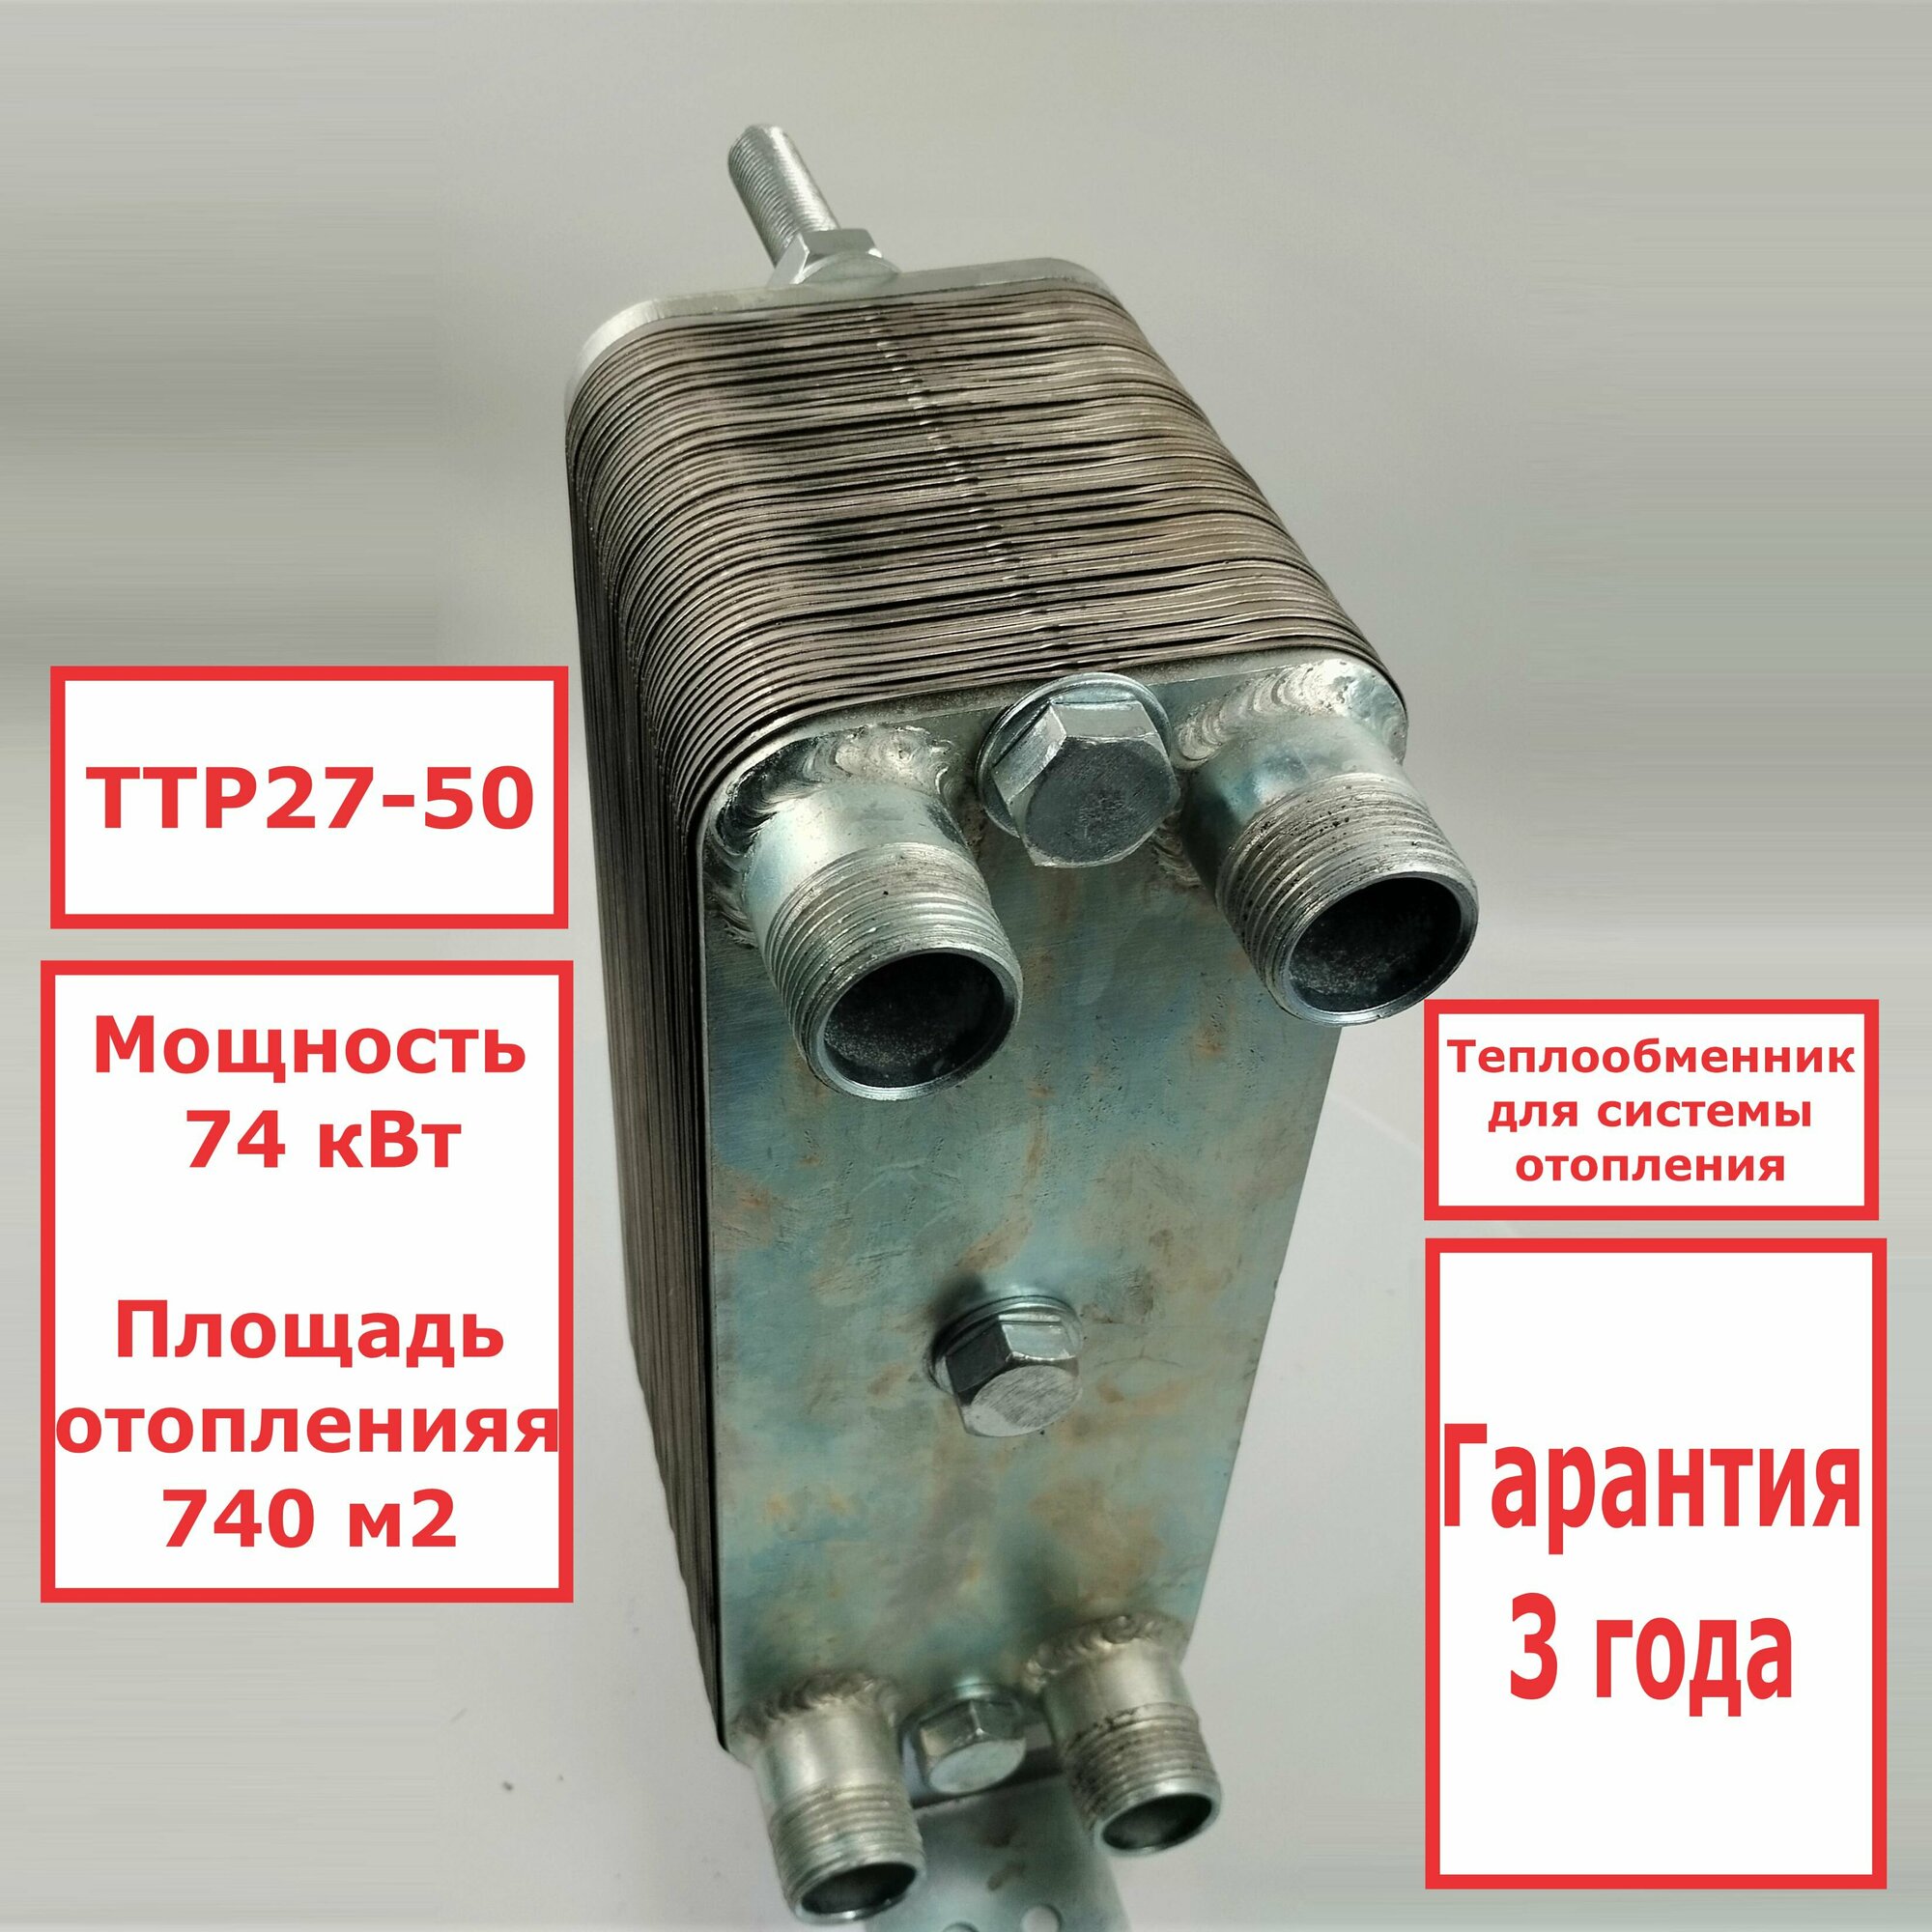 Микро разборный пластинчатый теплообменник ТТР27-50 для системы отопления 74 кВт. 740 м2